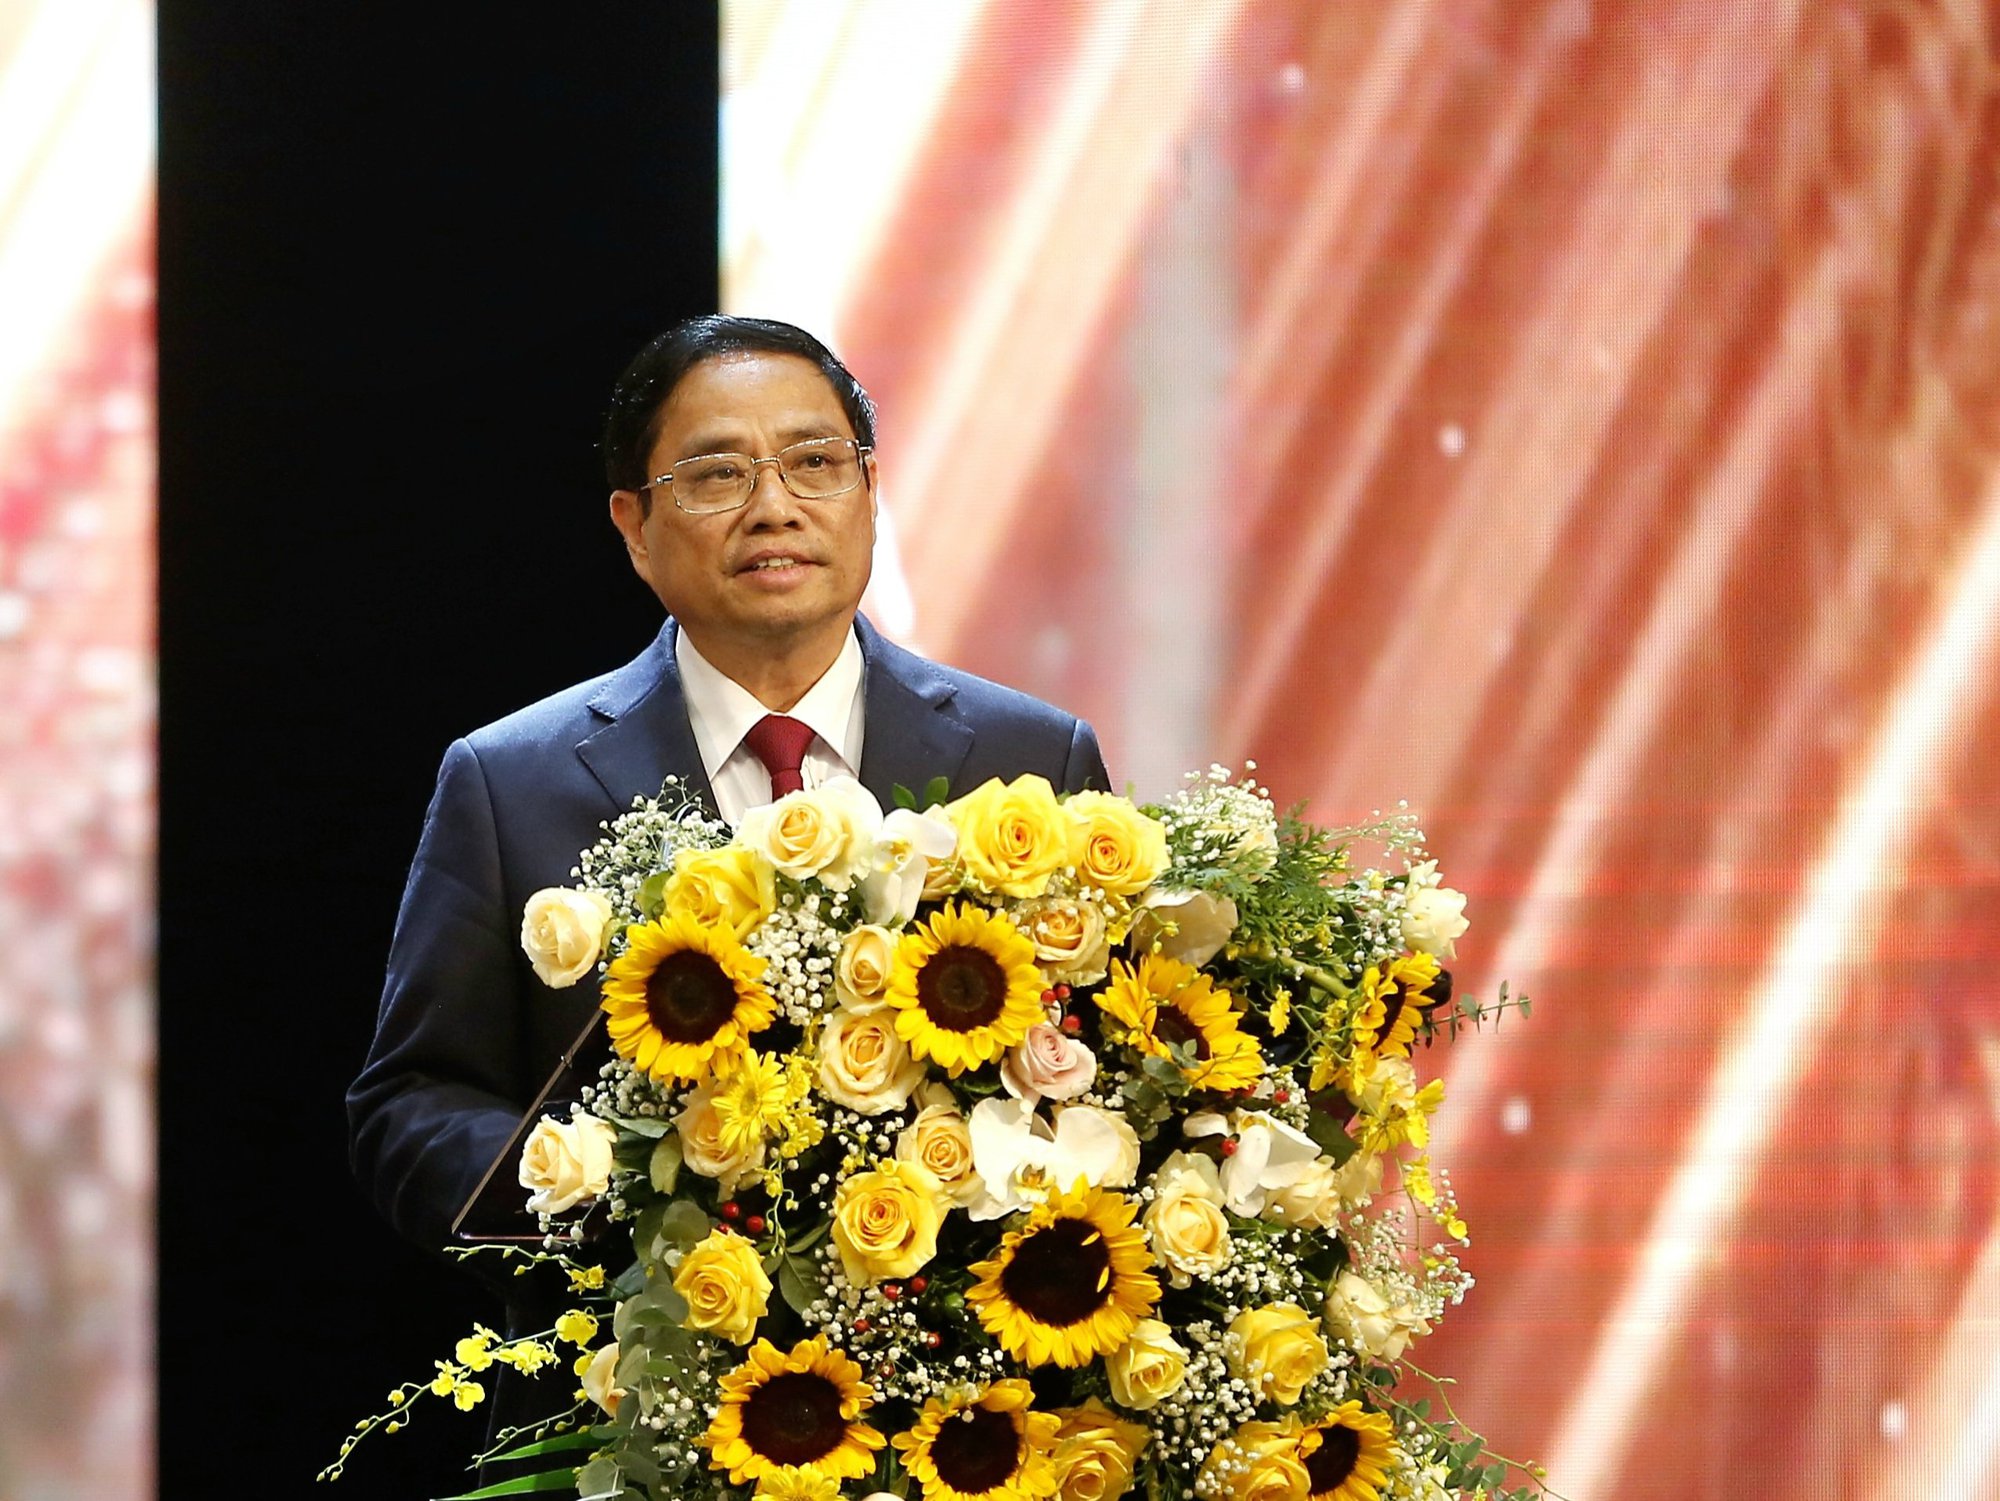 Thủ tướng Phạm Minh Chính: “Nghề báo vinh quang nhưng vất vả” - Ảnh 1.